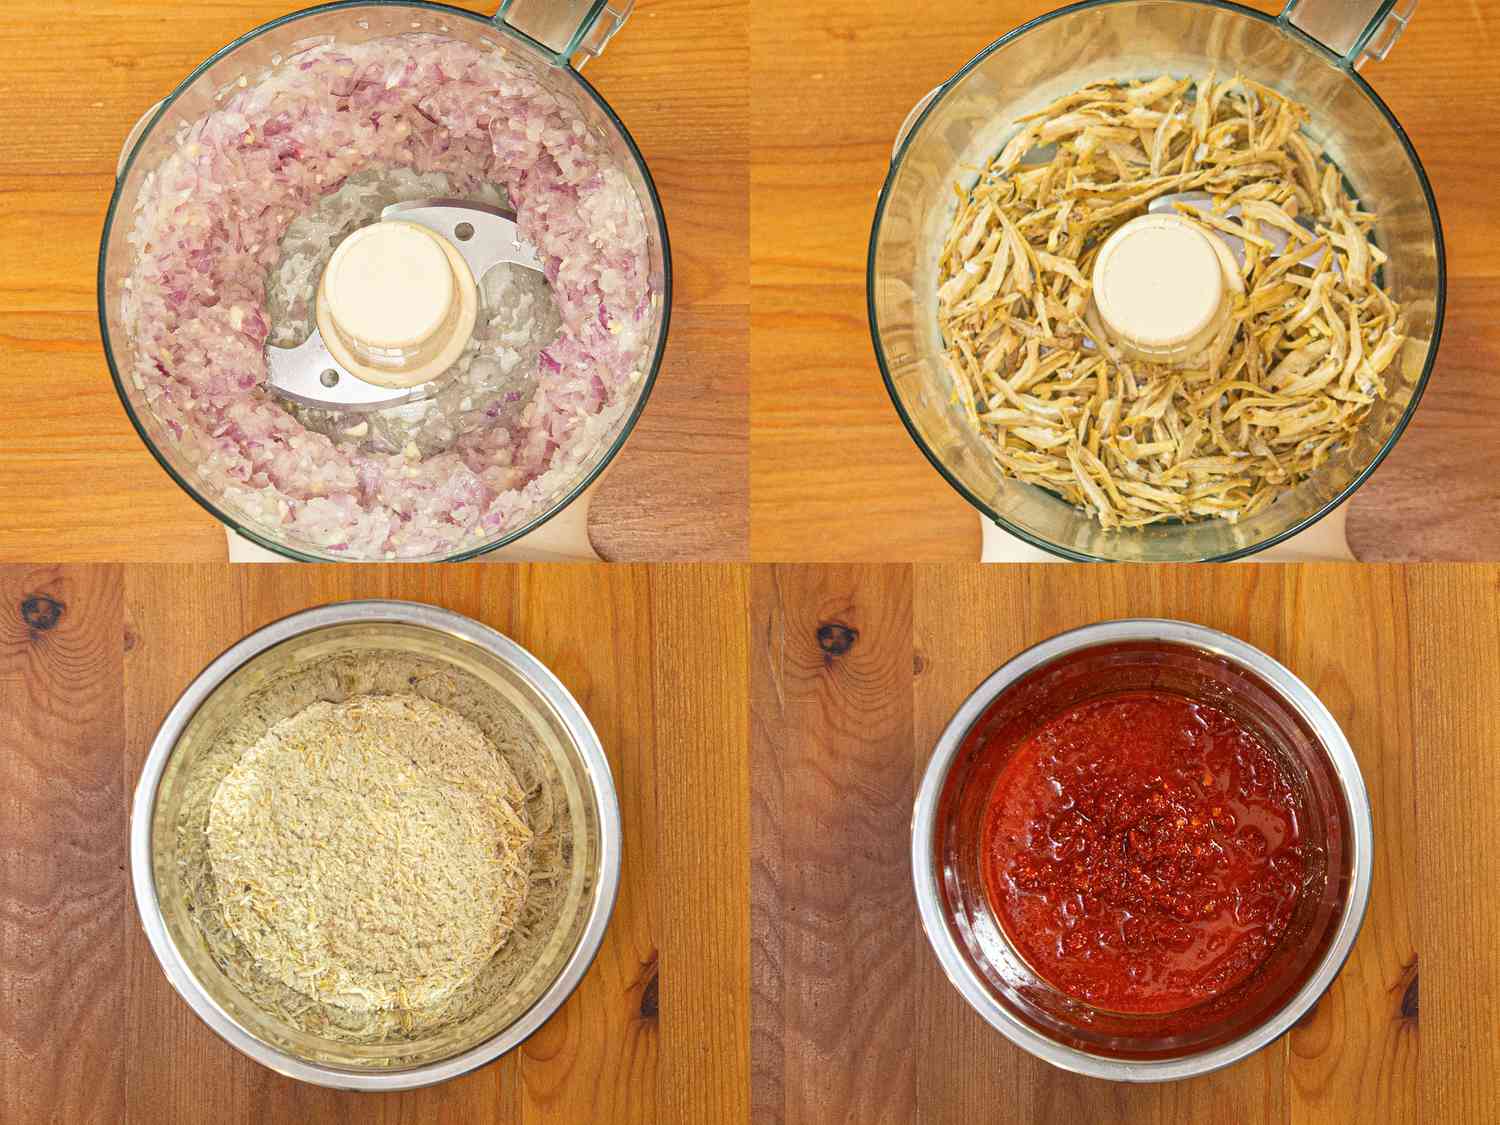 四幅图像拼贴:在食品加工机中加工的洋葱，加工前后的伊康比利，以及在碗中加工的辣椒酱